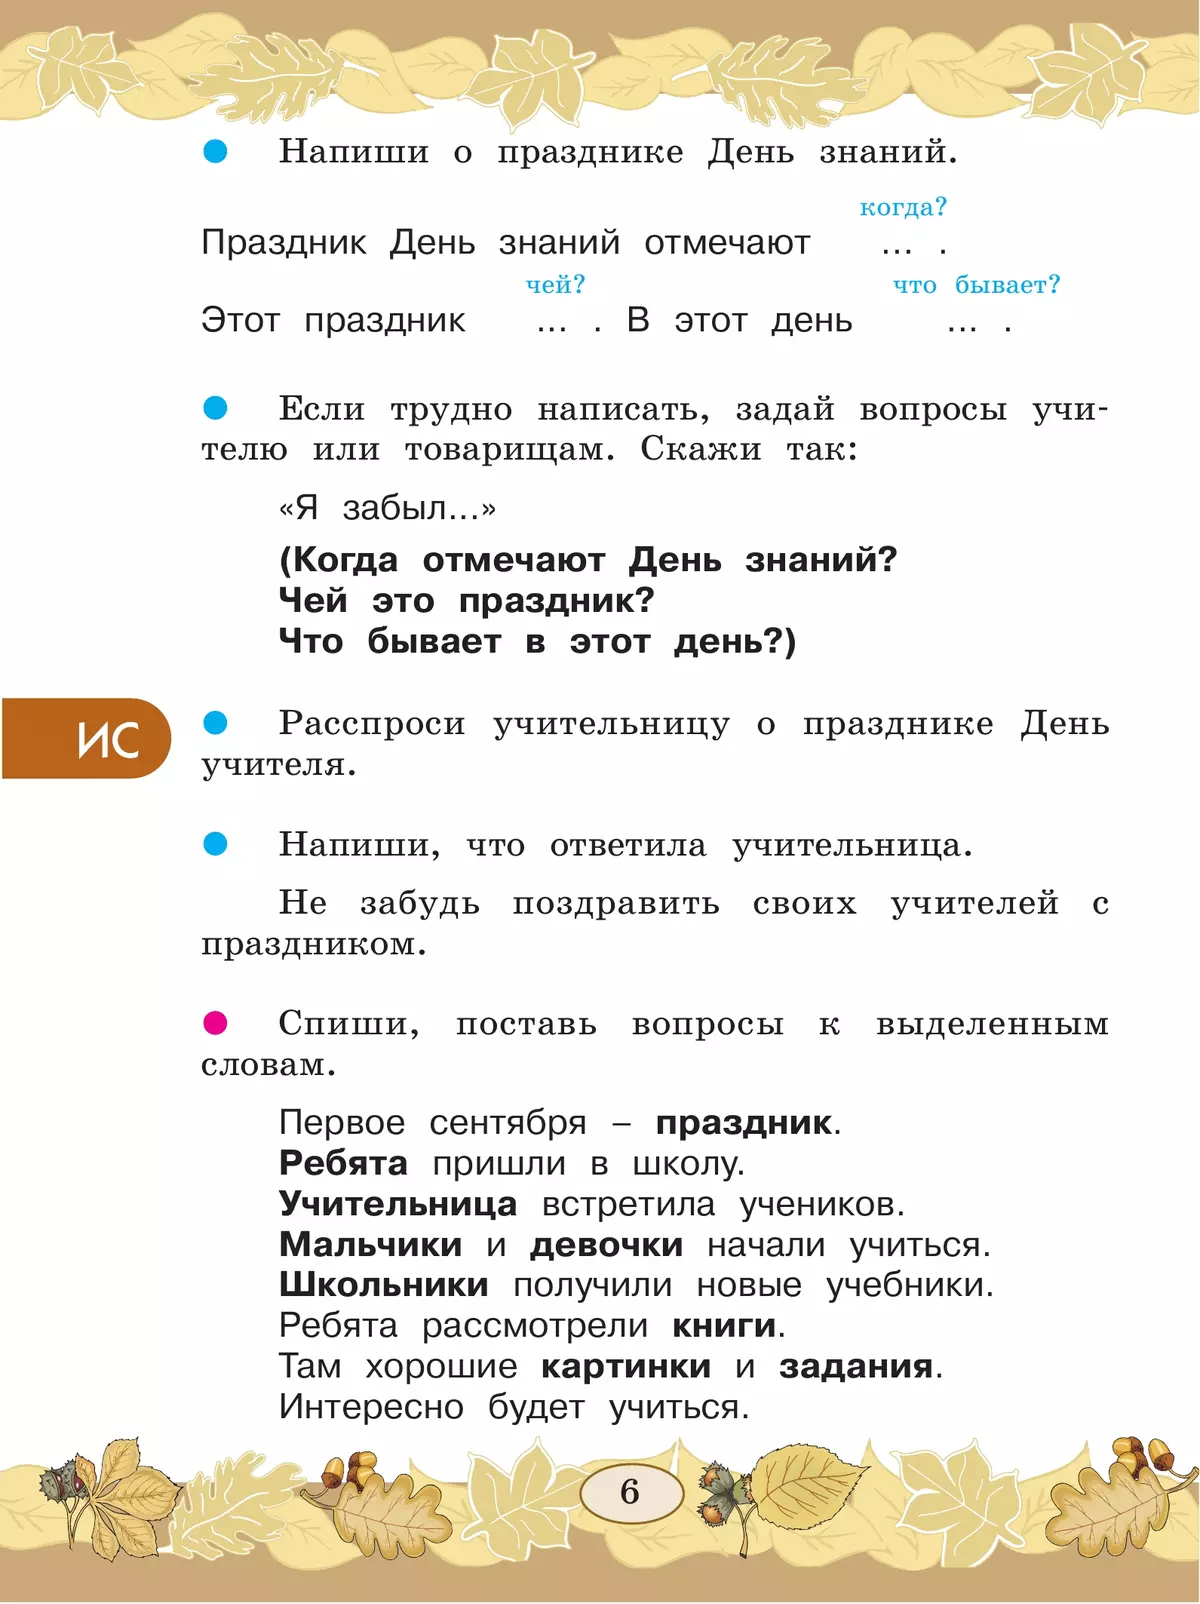 Русский язык. Развитие речи. 3 класс. Учебник. В 2 ч. Часть 1 (для глухих обучающихся) 3